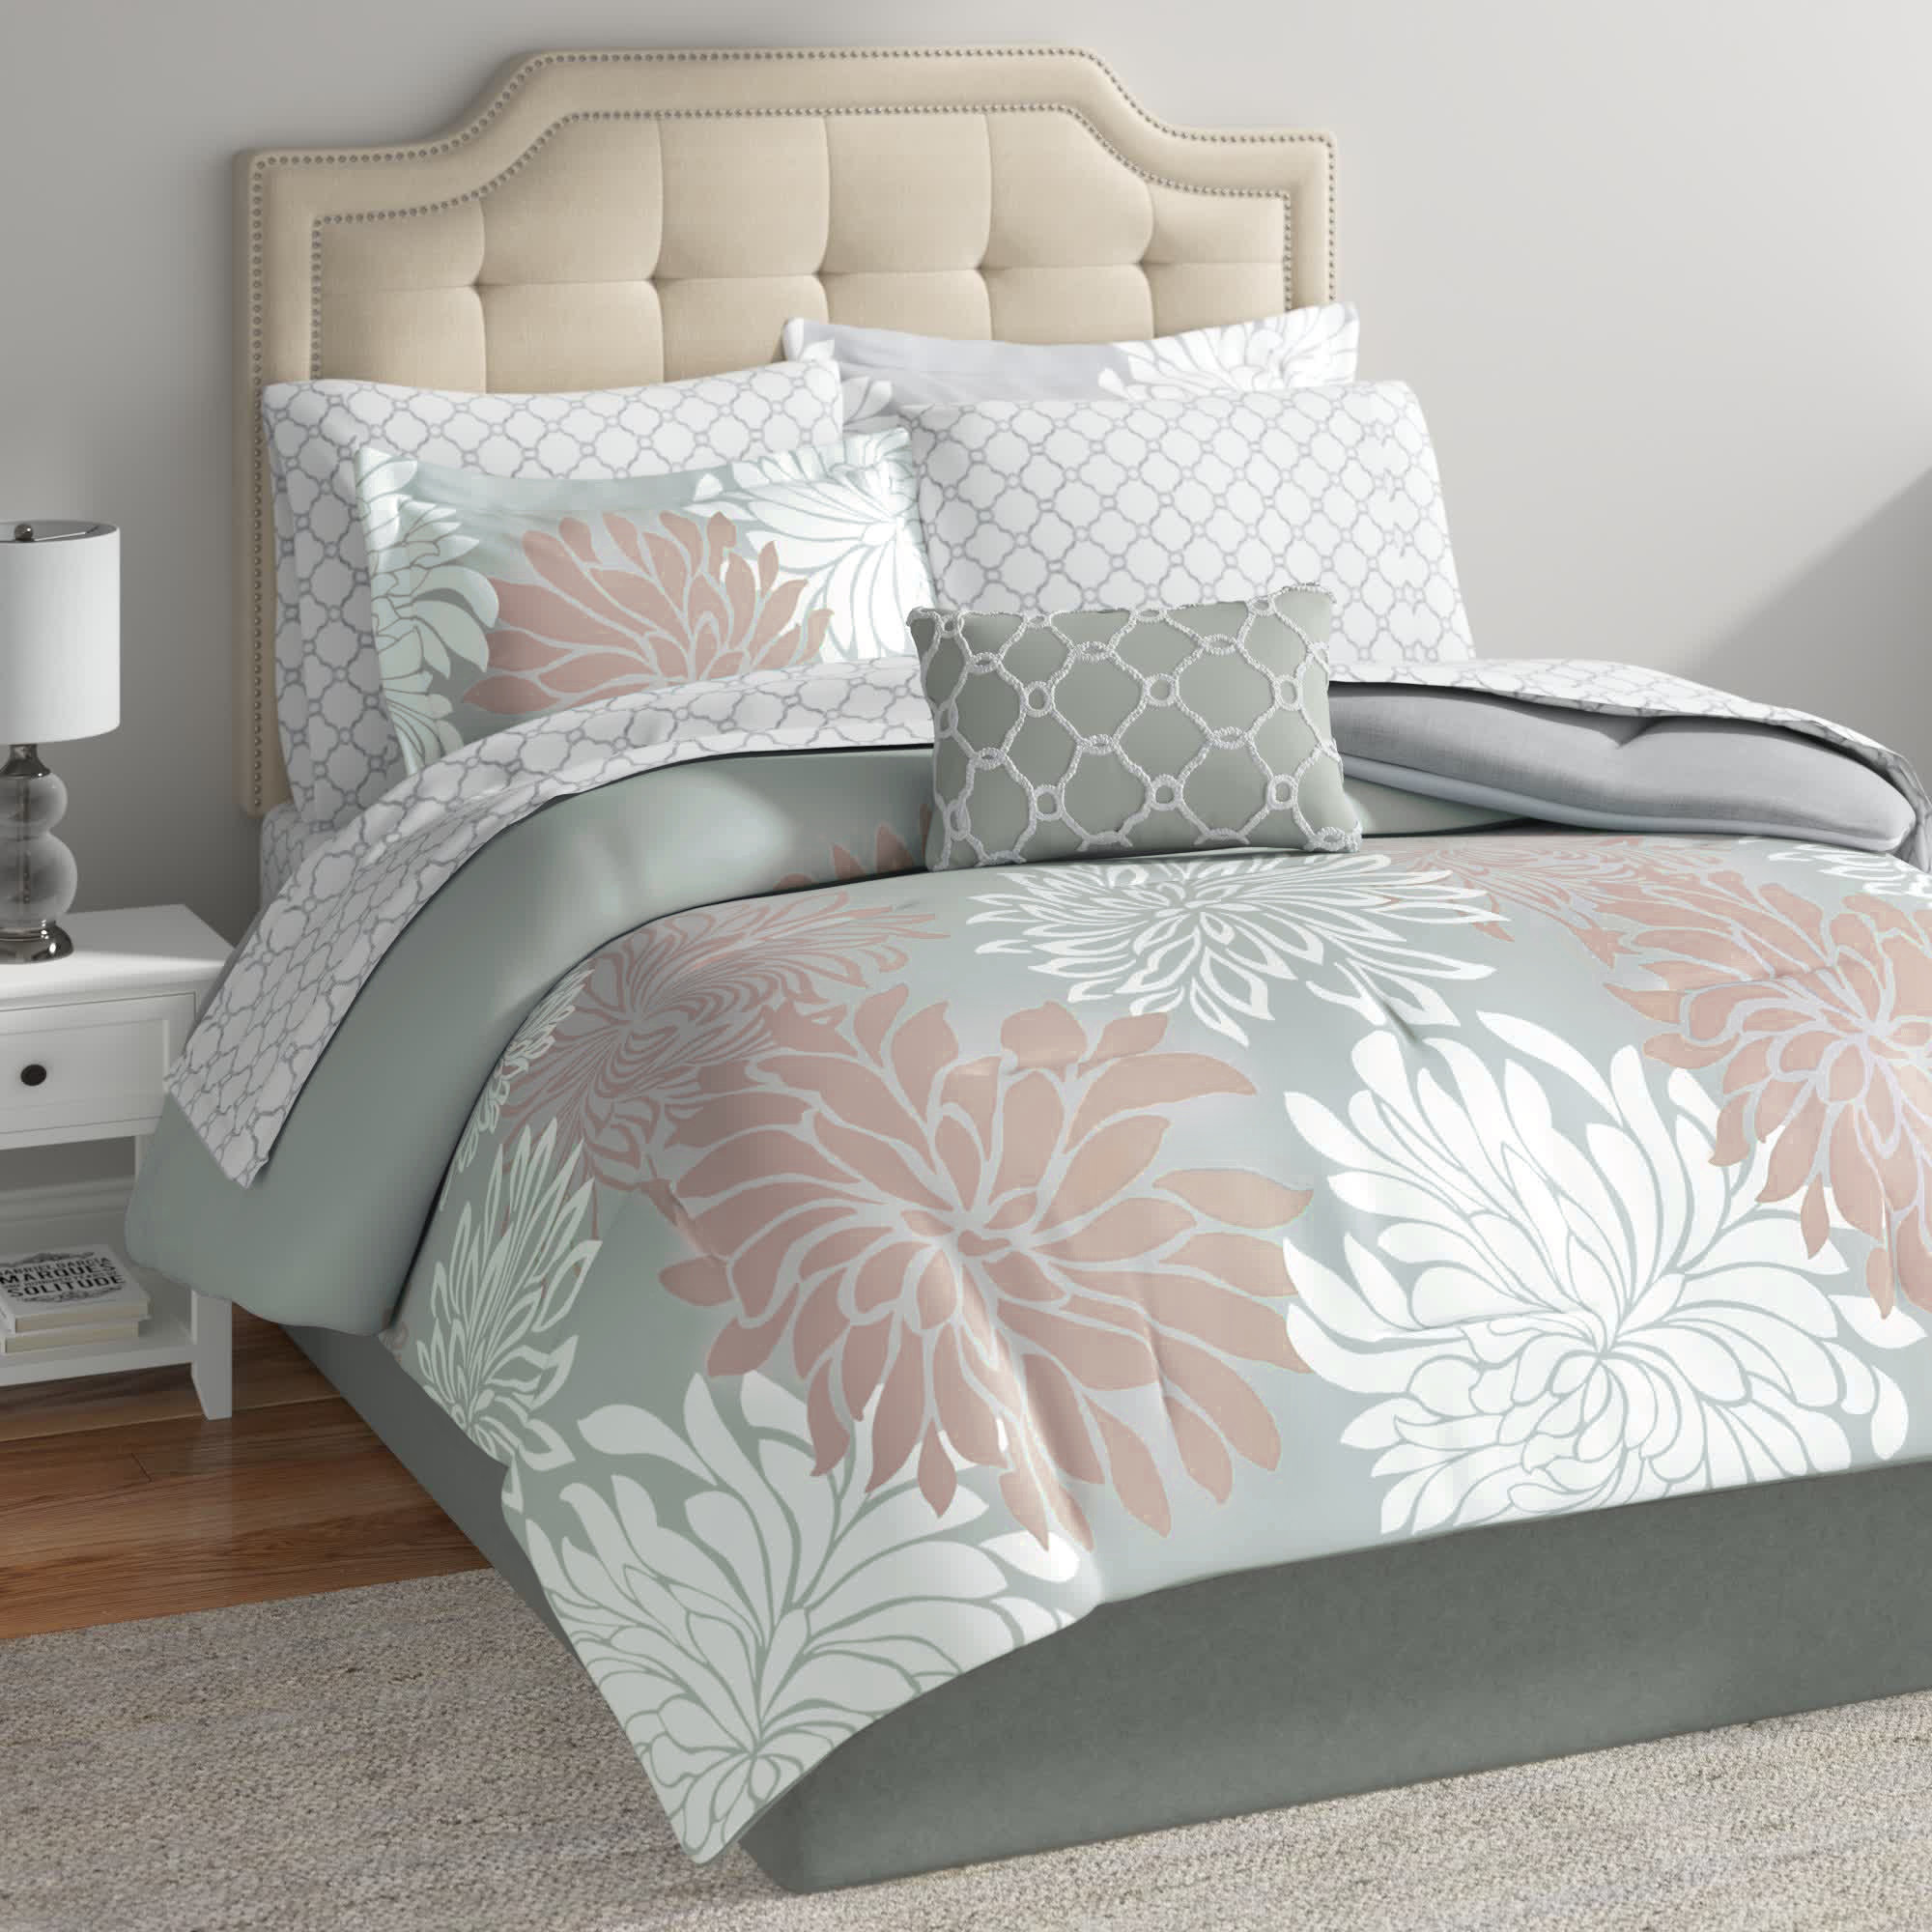 https://assets.wfcdn.com/im/60169872/compr-r85/2213/221371084/guthridge-microfiber-floral-comforter-set-with-cotton-bed-sheets.jpg